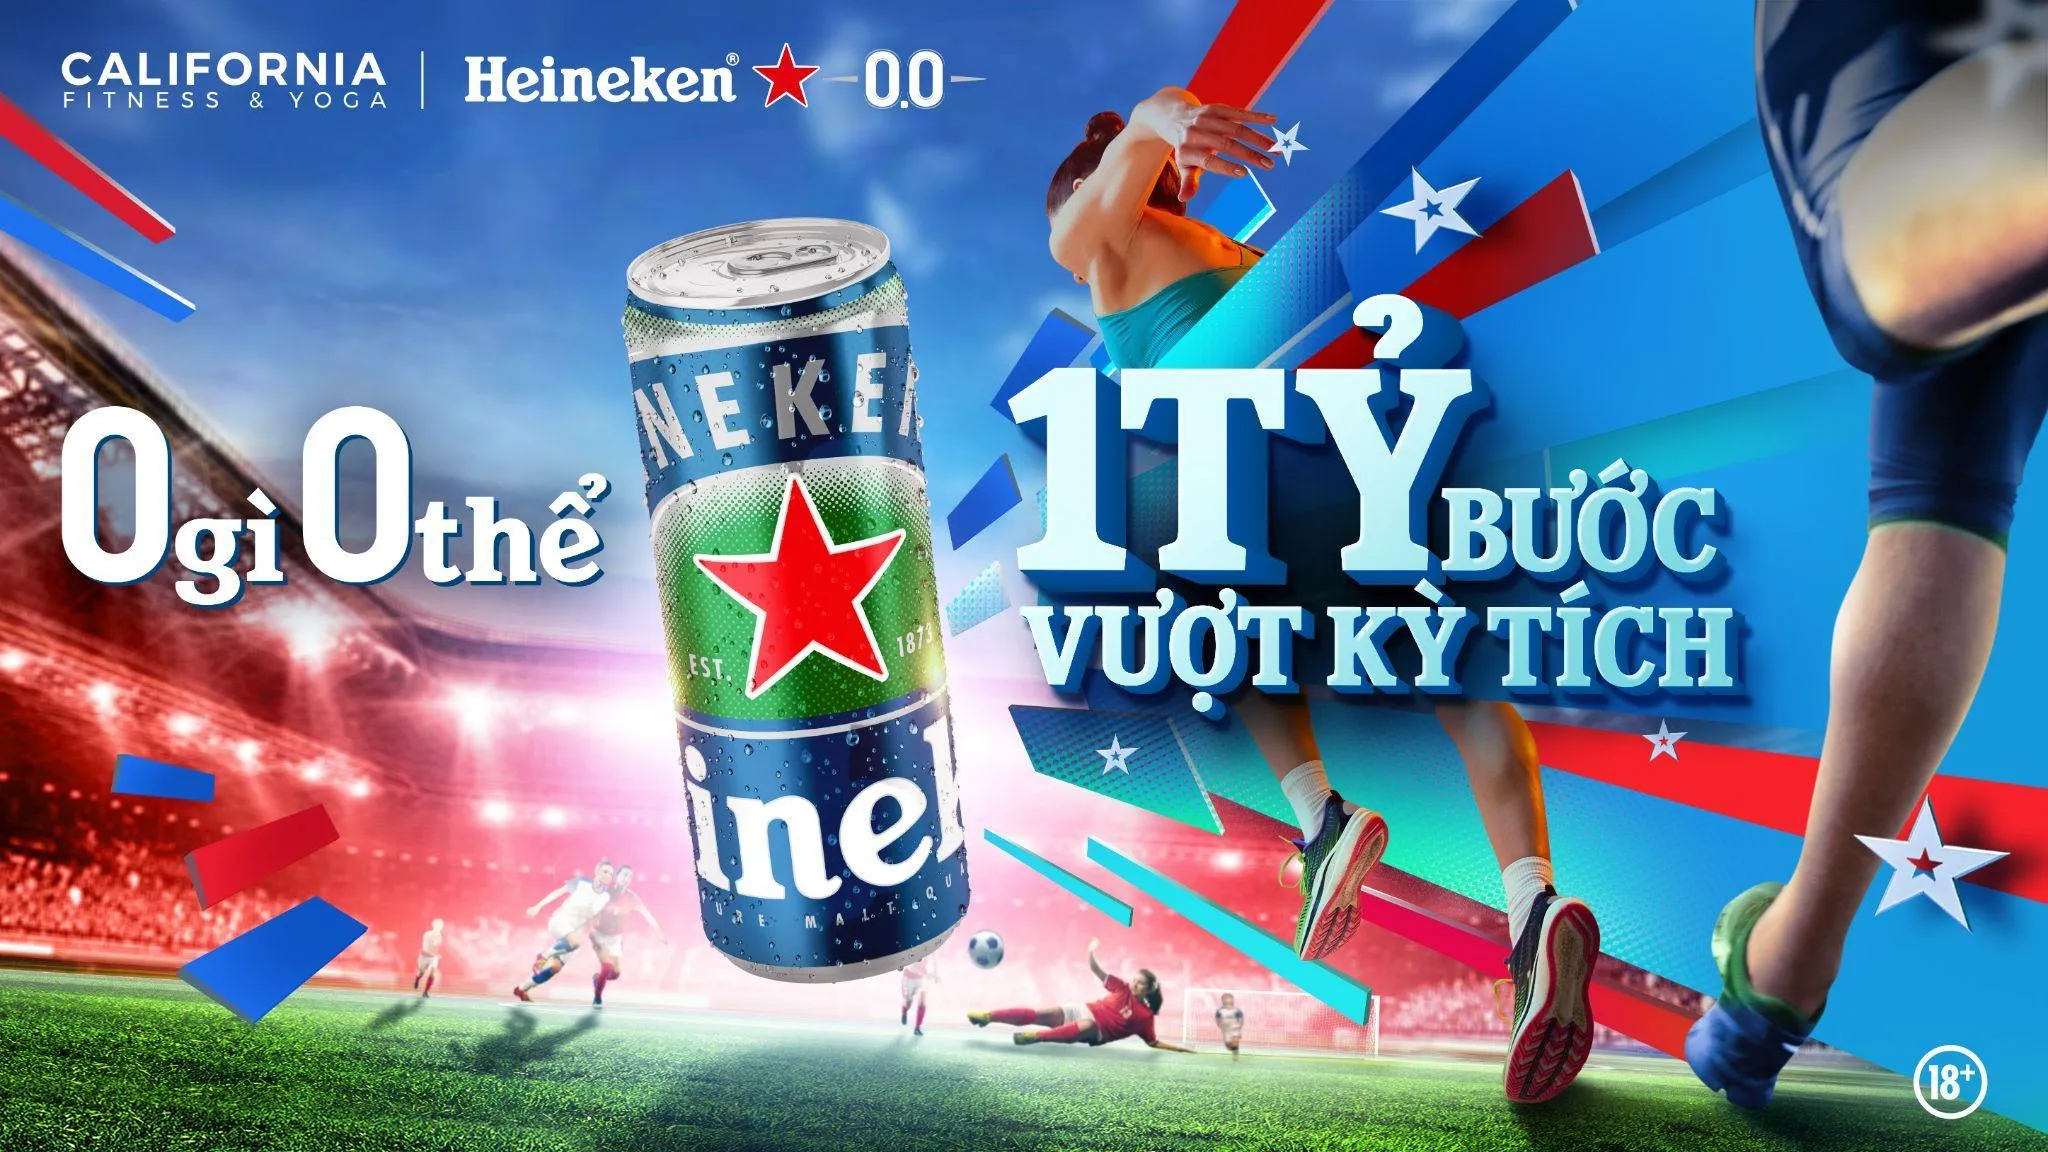 Hơn 10,000 người cùng cán mốc 1.3 tỷ bước chân với tinh thần 0 gì 0 thể của Heineken® 0.0